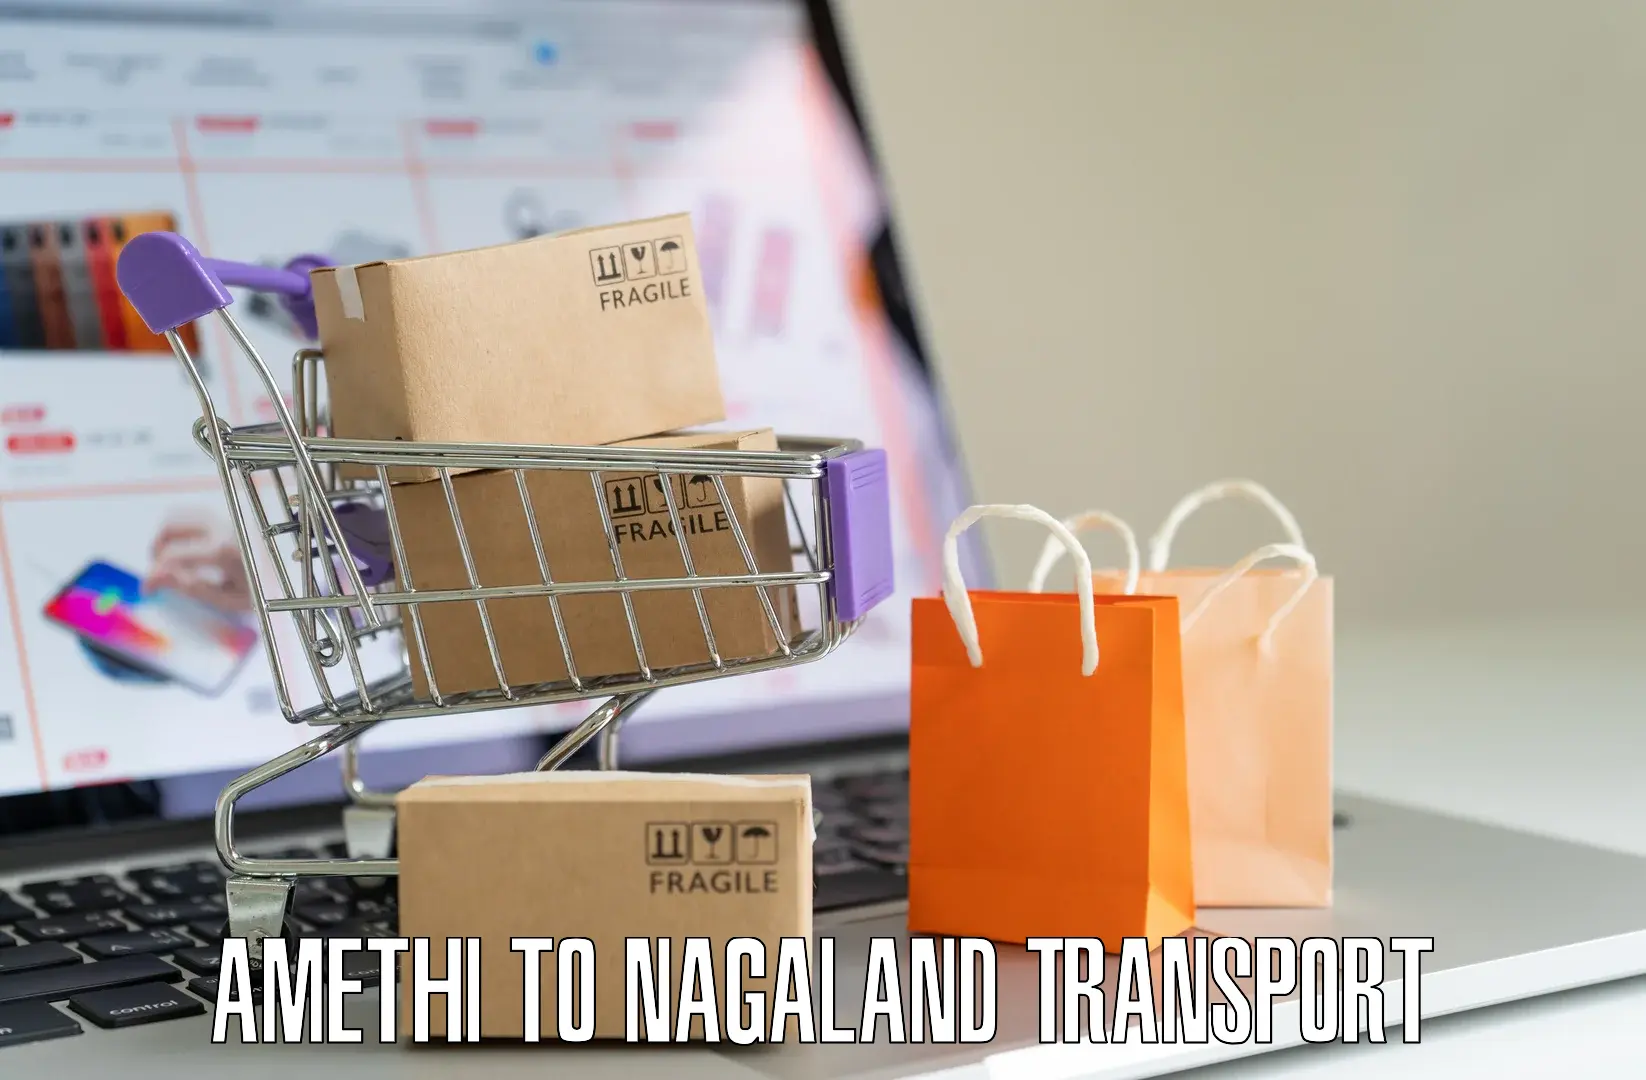 Parcel transport services Amethi to Nagaland